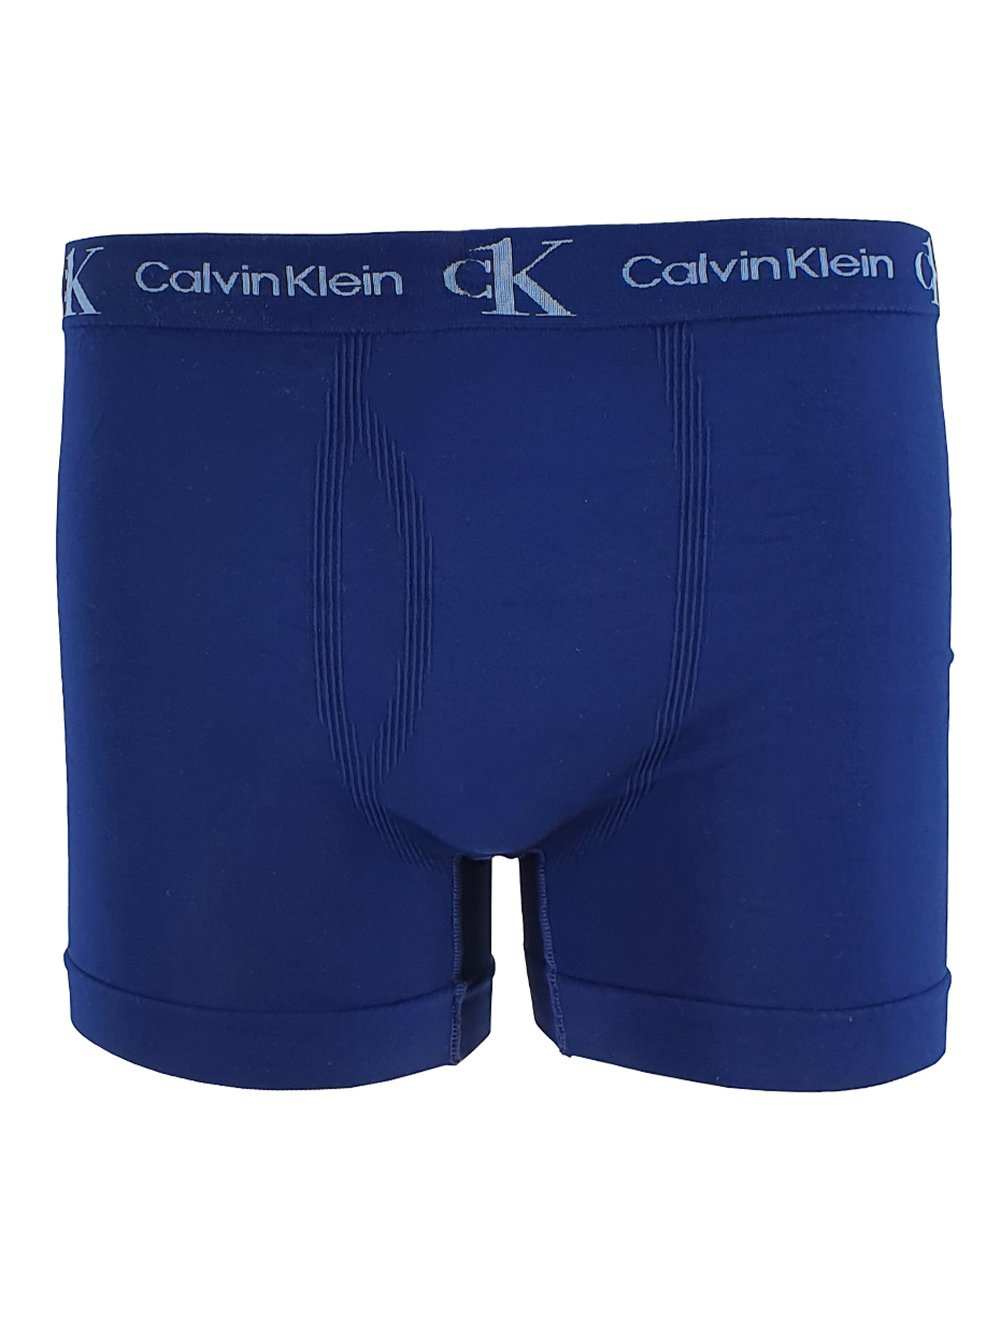 Cueca Sunga Calvin Klein ck One Prin ii Algodão Azul na Americanas Empresas